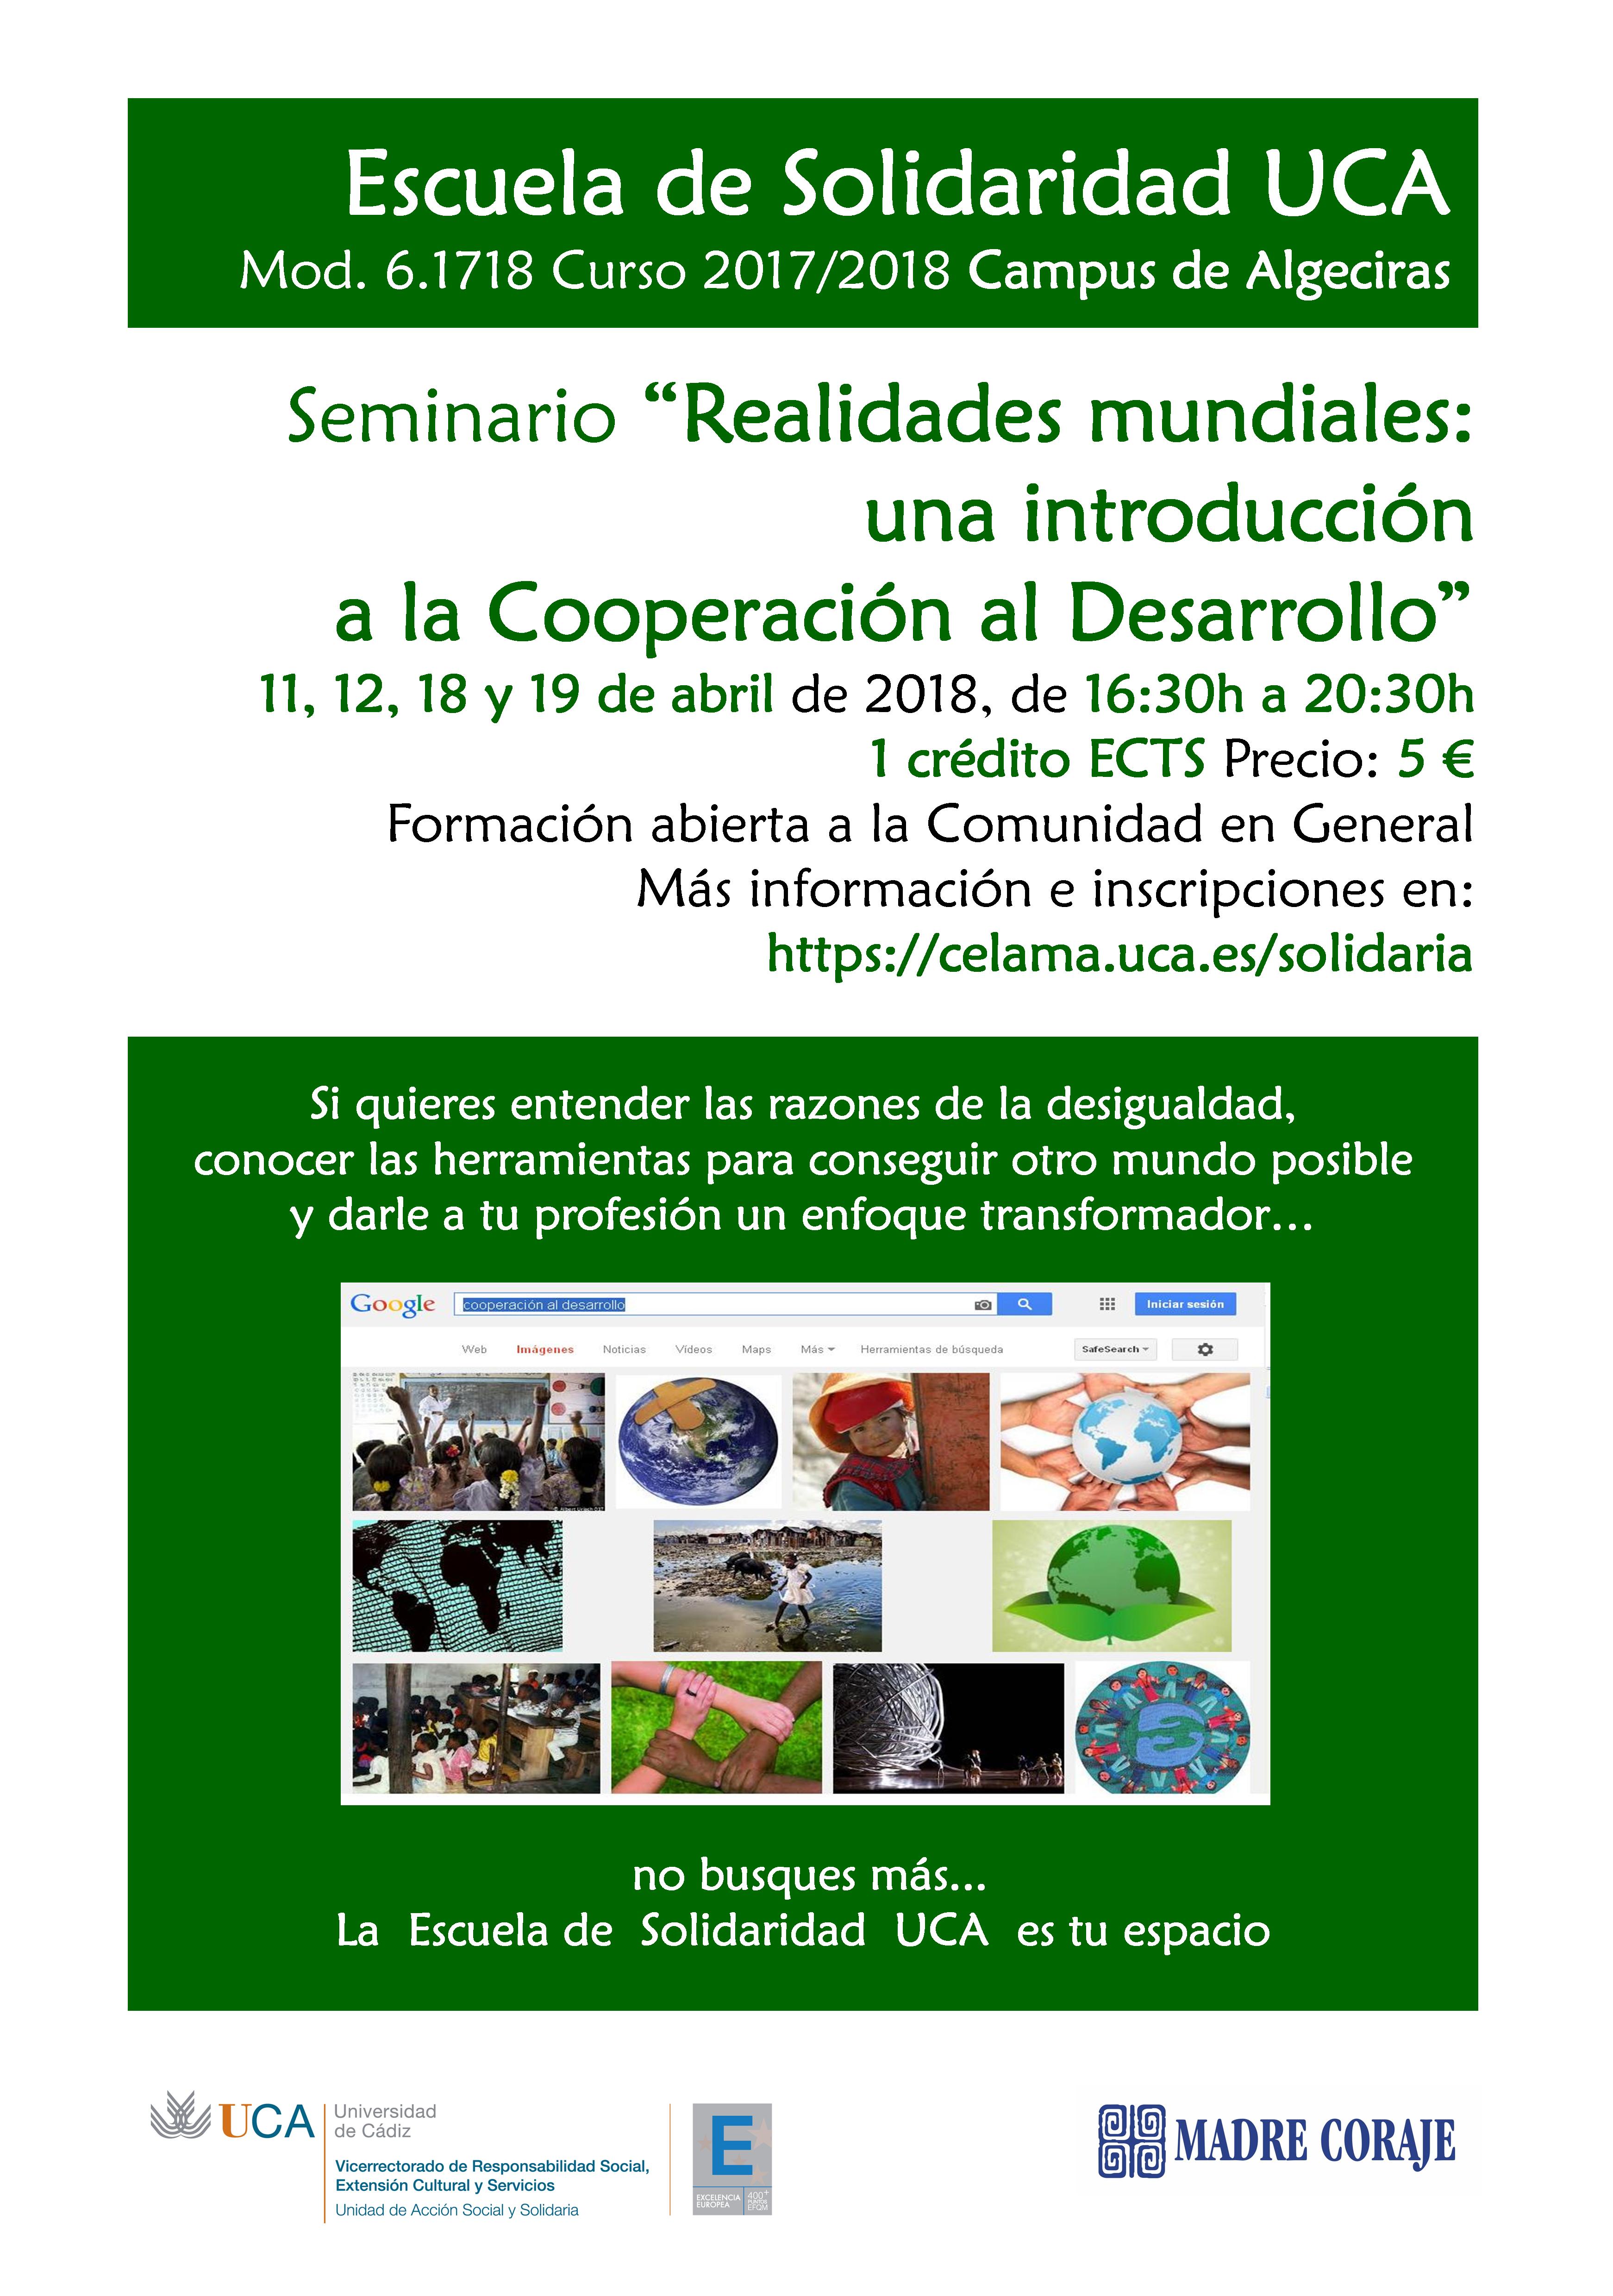 11, 12, 18 y 19 de abril. Campus de Algeciras. Escuela de Solidaridad UCA. Seminario “Realidades mundiales: una introducción a la Cooperación al Desarrollo”